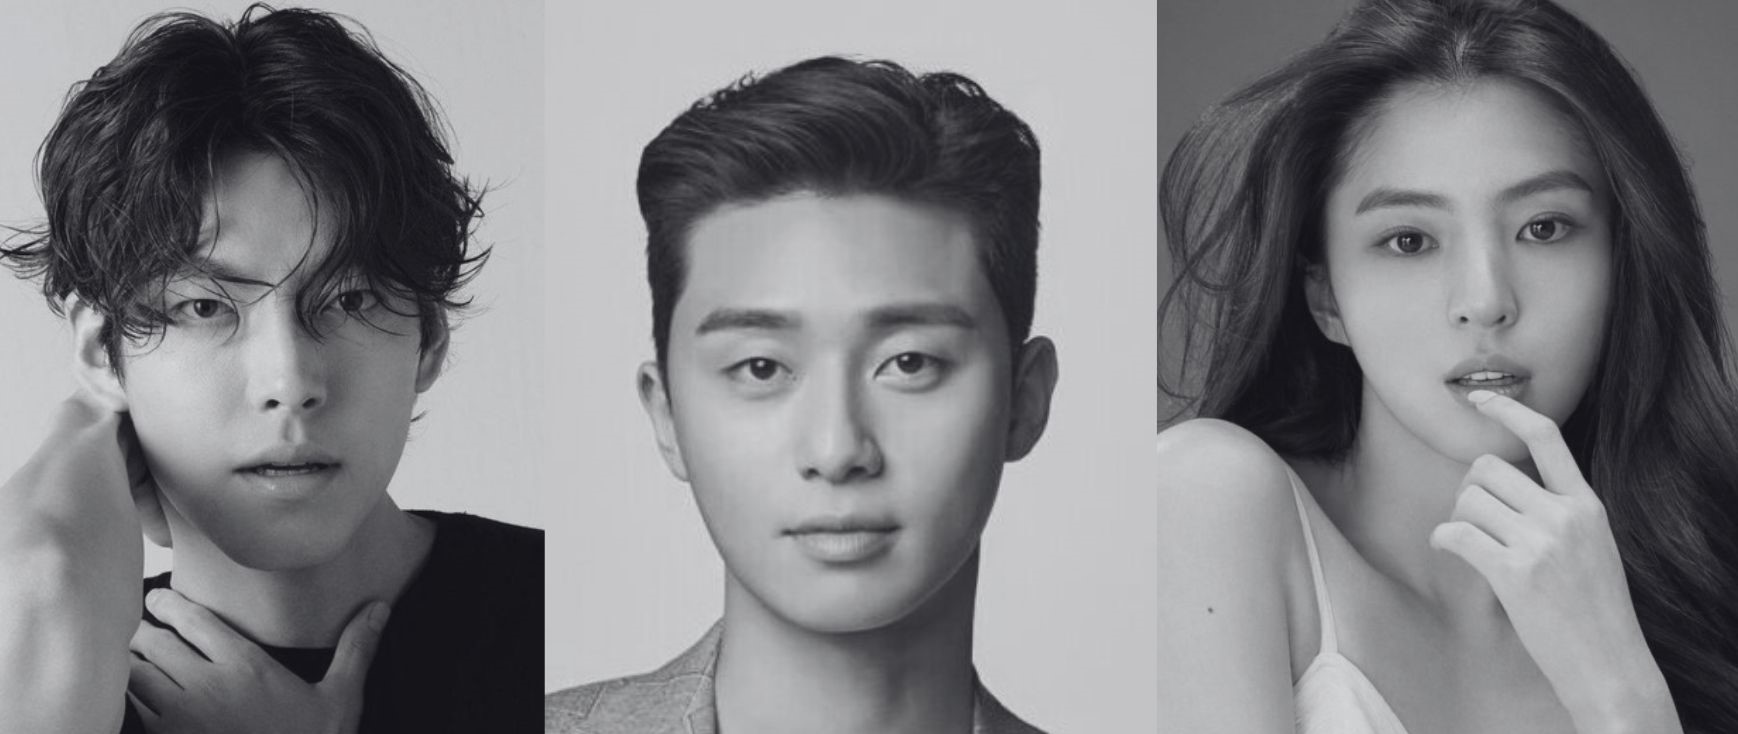 Kim Woo Bin, Park Seo Joon, Han So Hee